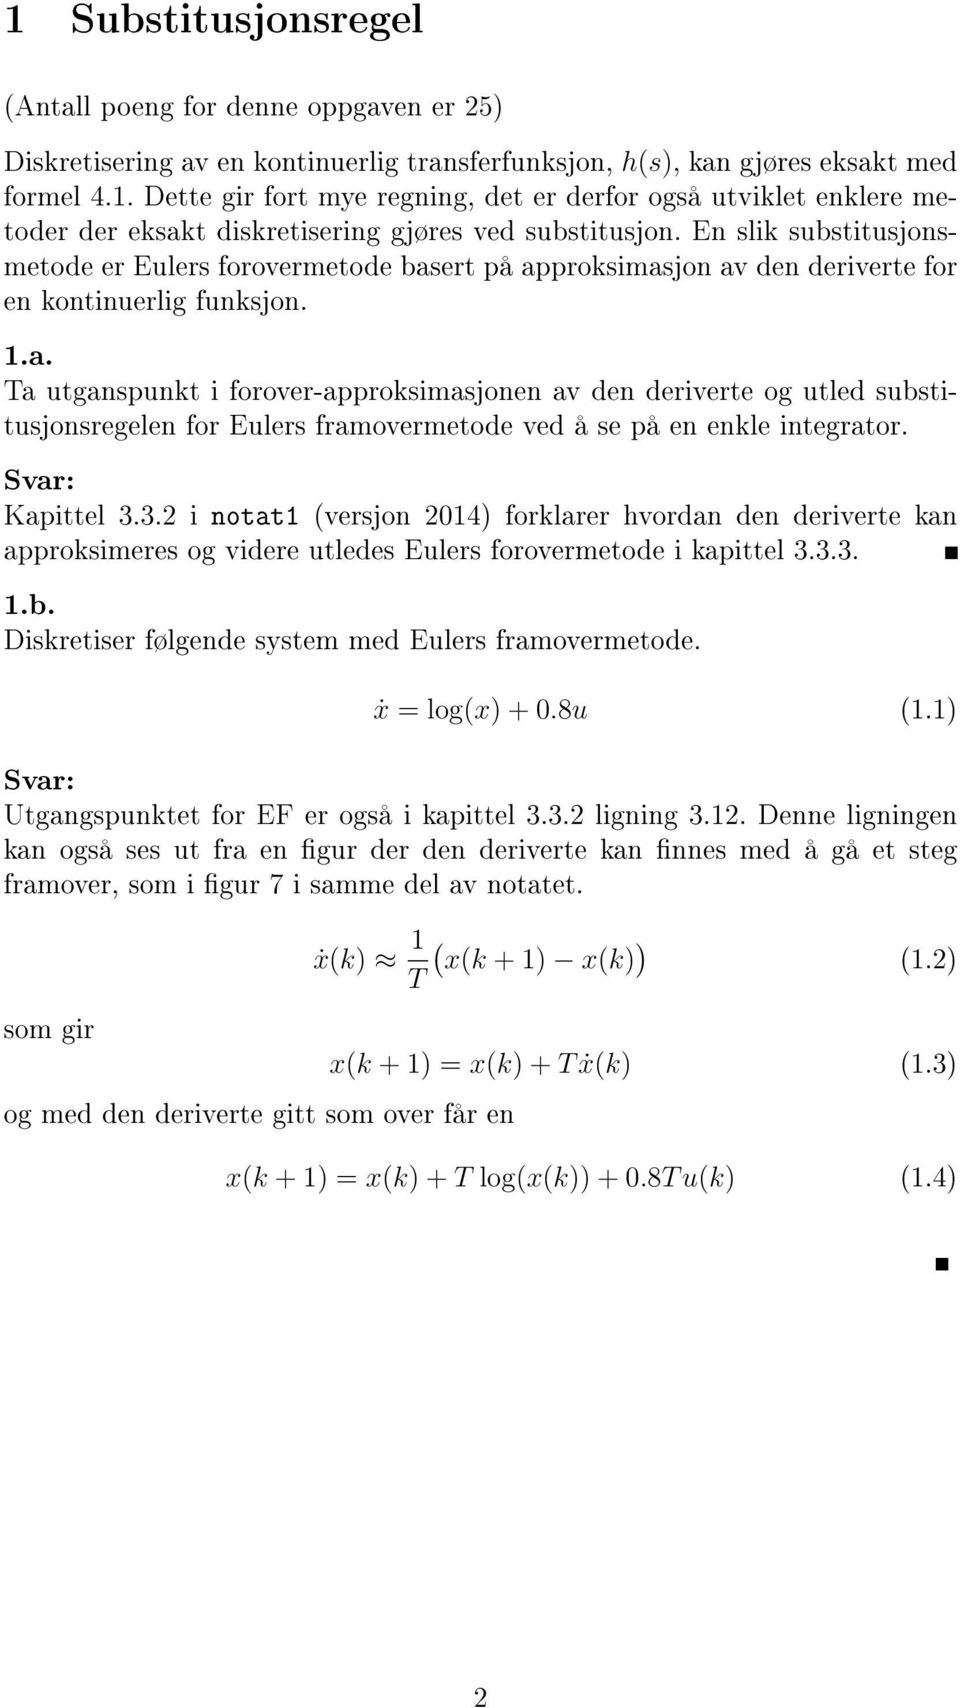 Kapittel 3.3.2 i notat1 (versjon 2014) forklarer hvoran en eriverte kan approksimeres og viere utlees Eulers forovermetoe i kapittel 3.3.3. 1.b. Diskretiser følgene system me Eulers framovermetoe.